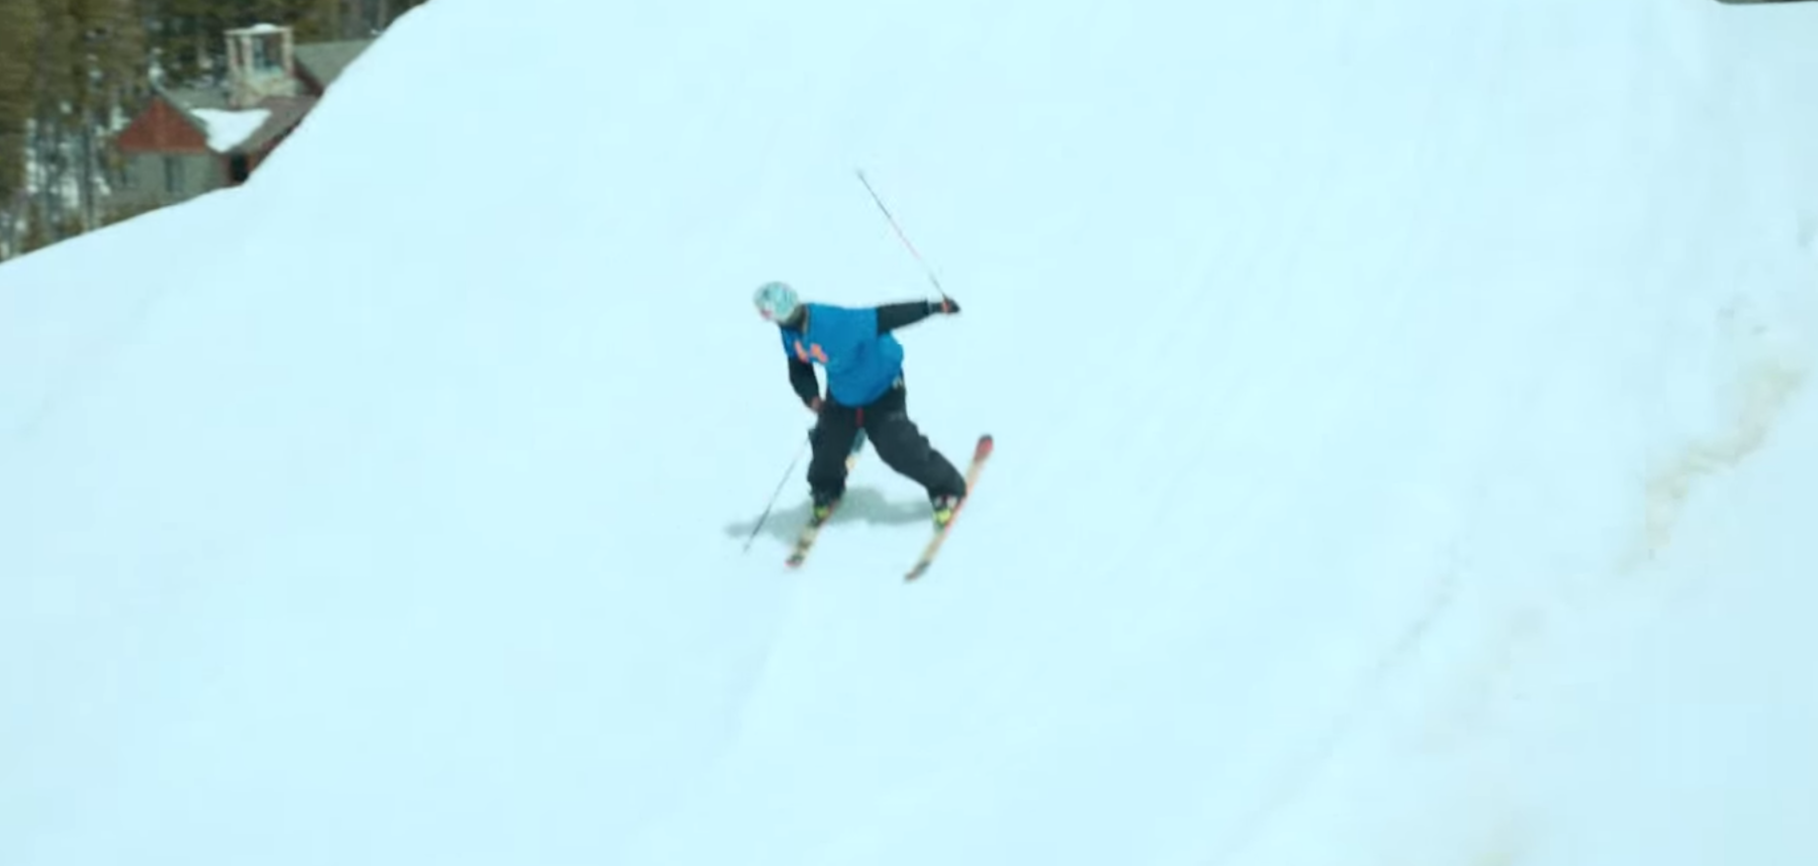 How to ski backwards